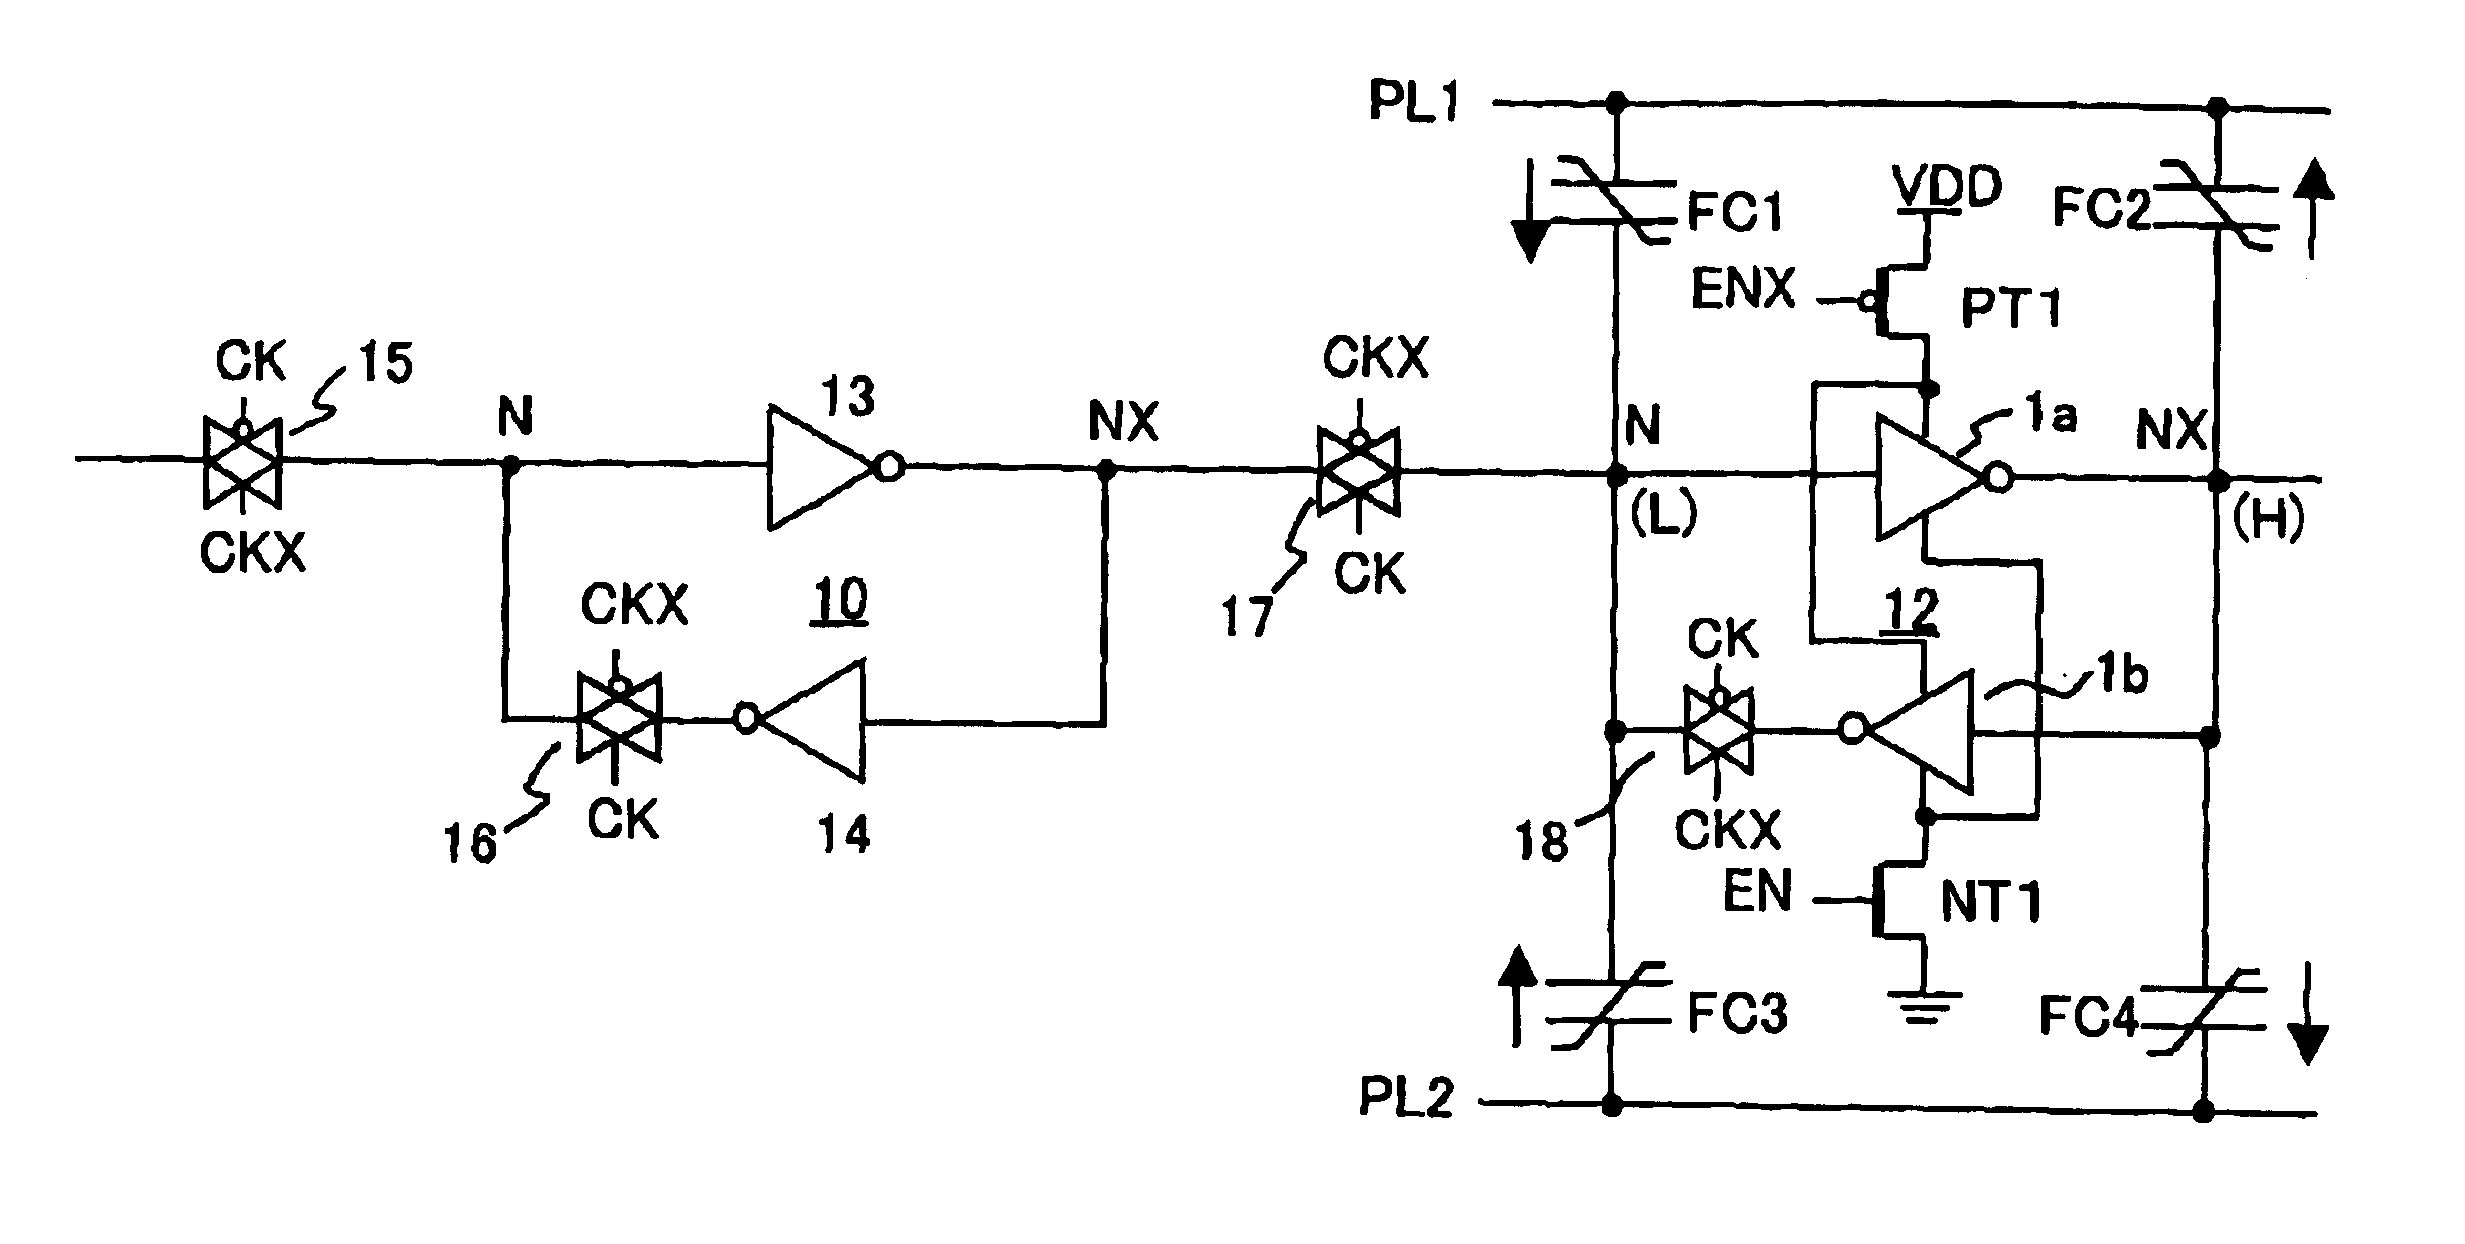 Nonvolatile data storage circuit using ferroelectric capacitors